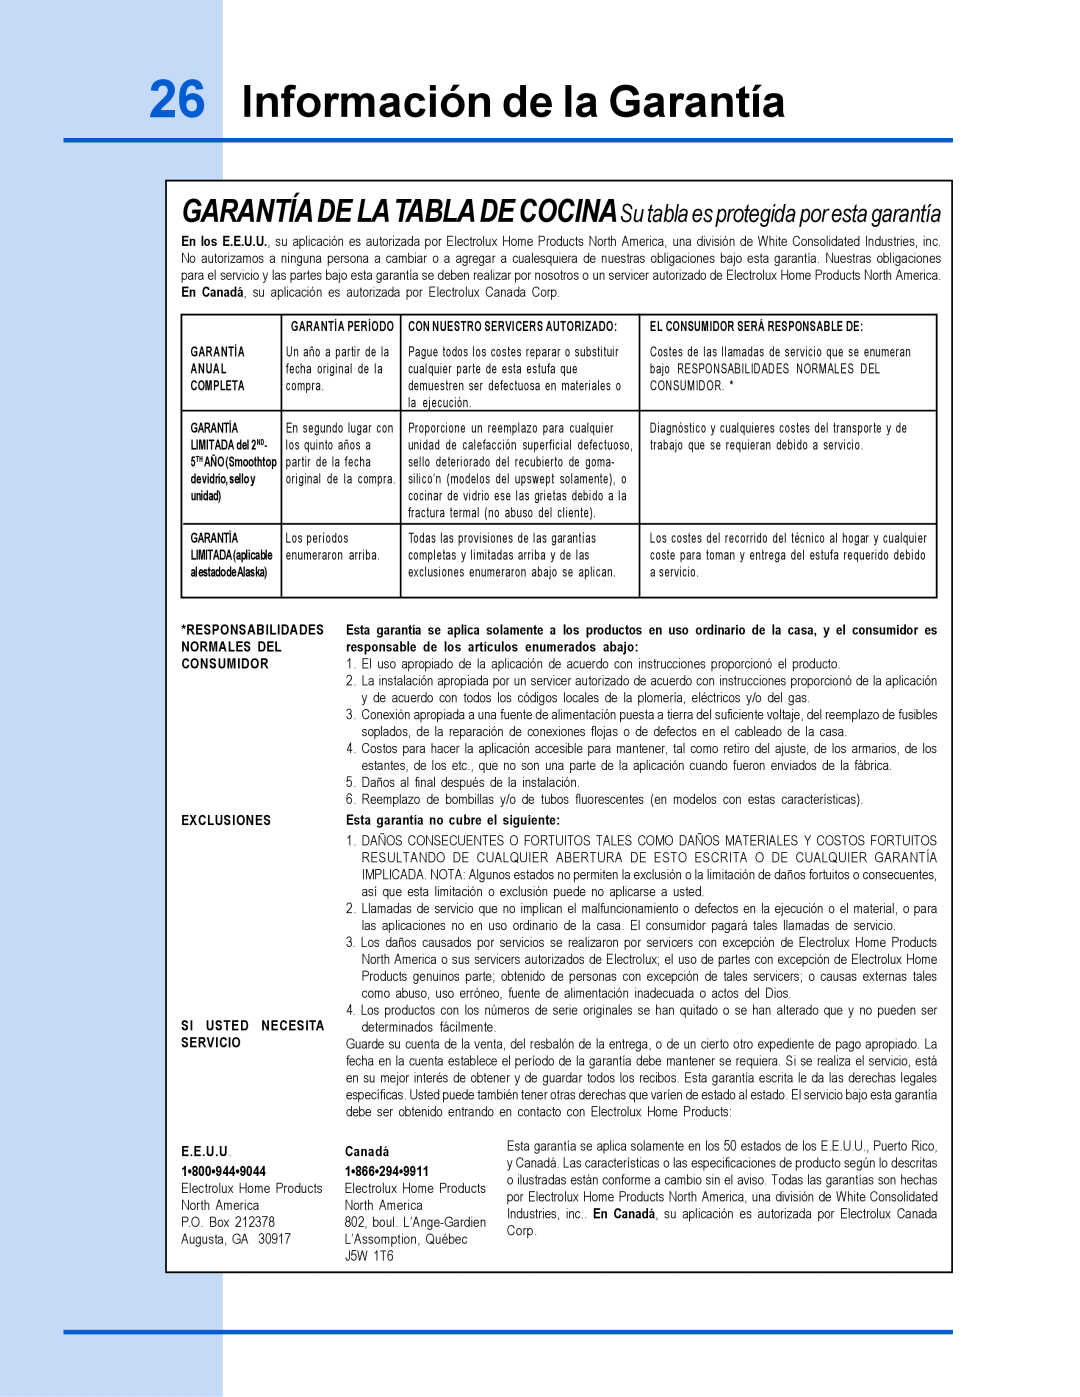 Electrolux 318 200 635 Información de la Garantía, GARANTÍA DE LATABLA DE COCINASu tabla es protegida por esta garantía 